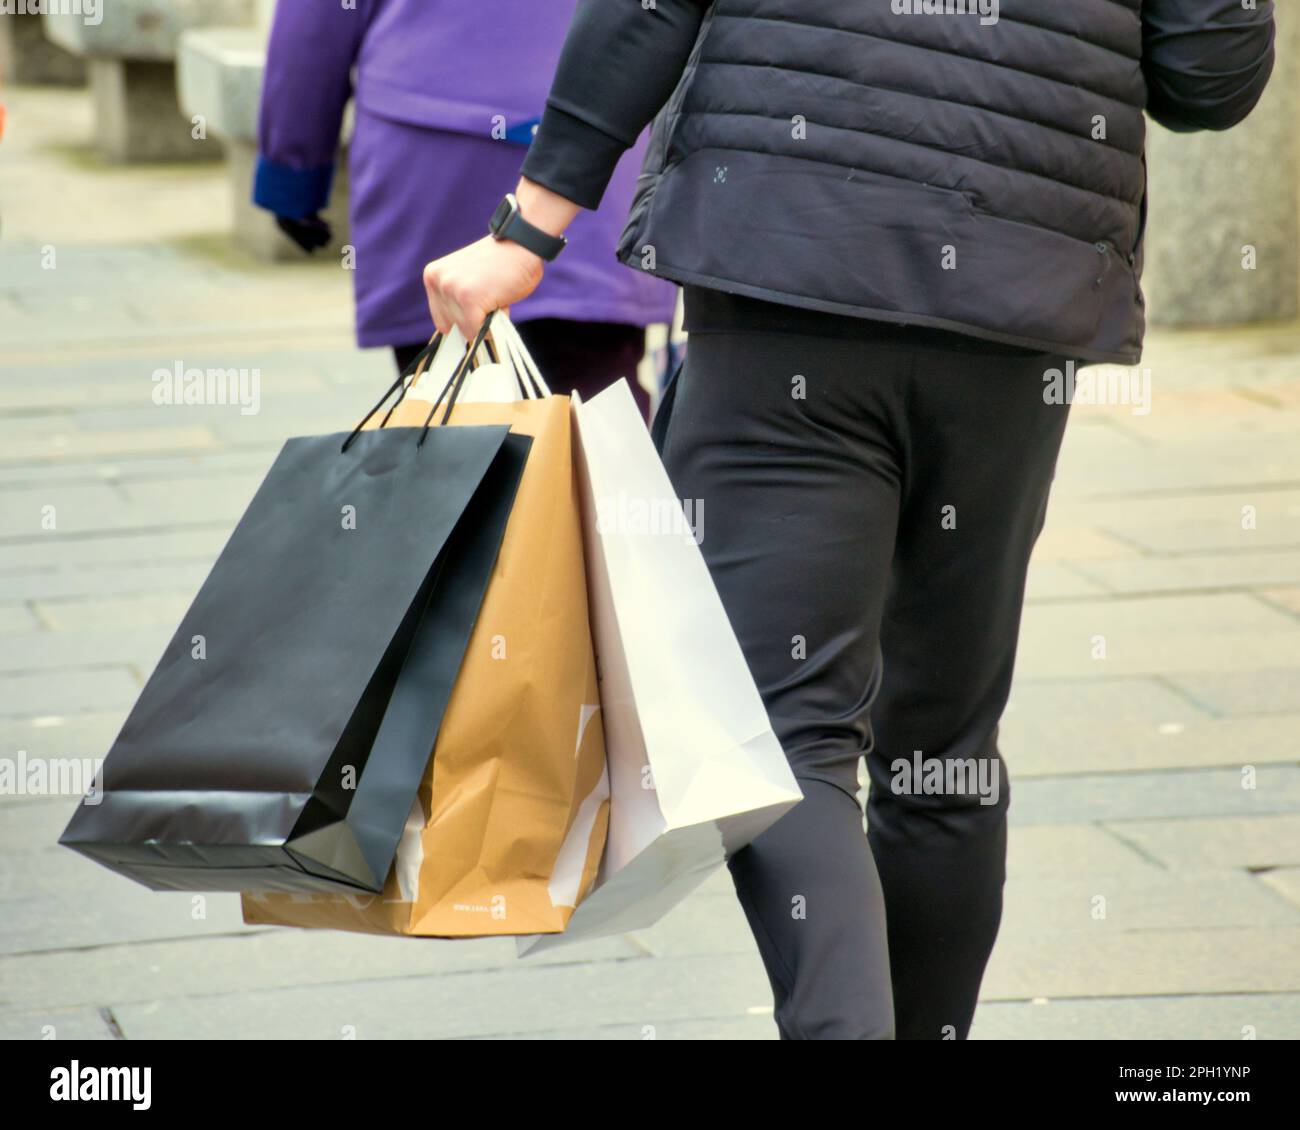 Einkaufsbummel sah Einkaufstüten auf der Buchanan Street, der stilvollen Meile und der Einkaufshauptstadt Schottlands. Stockfoto